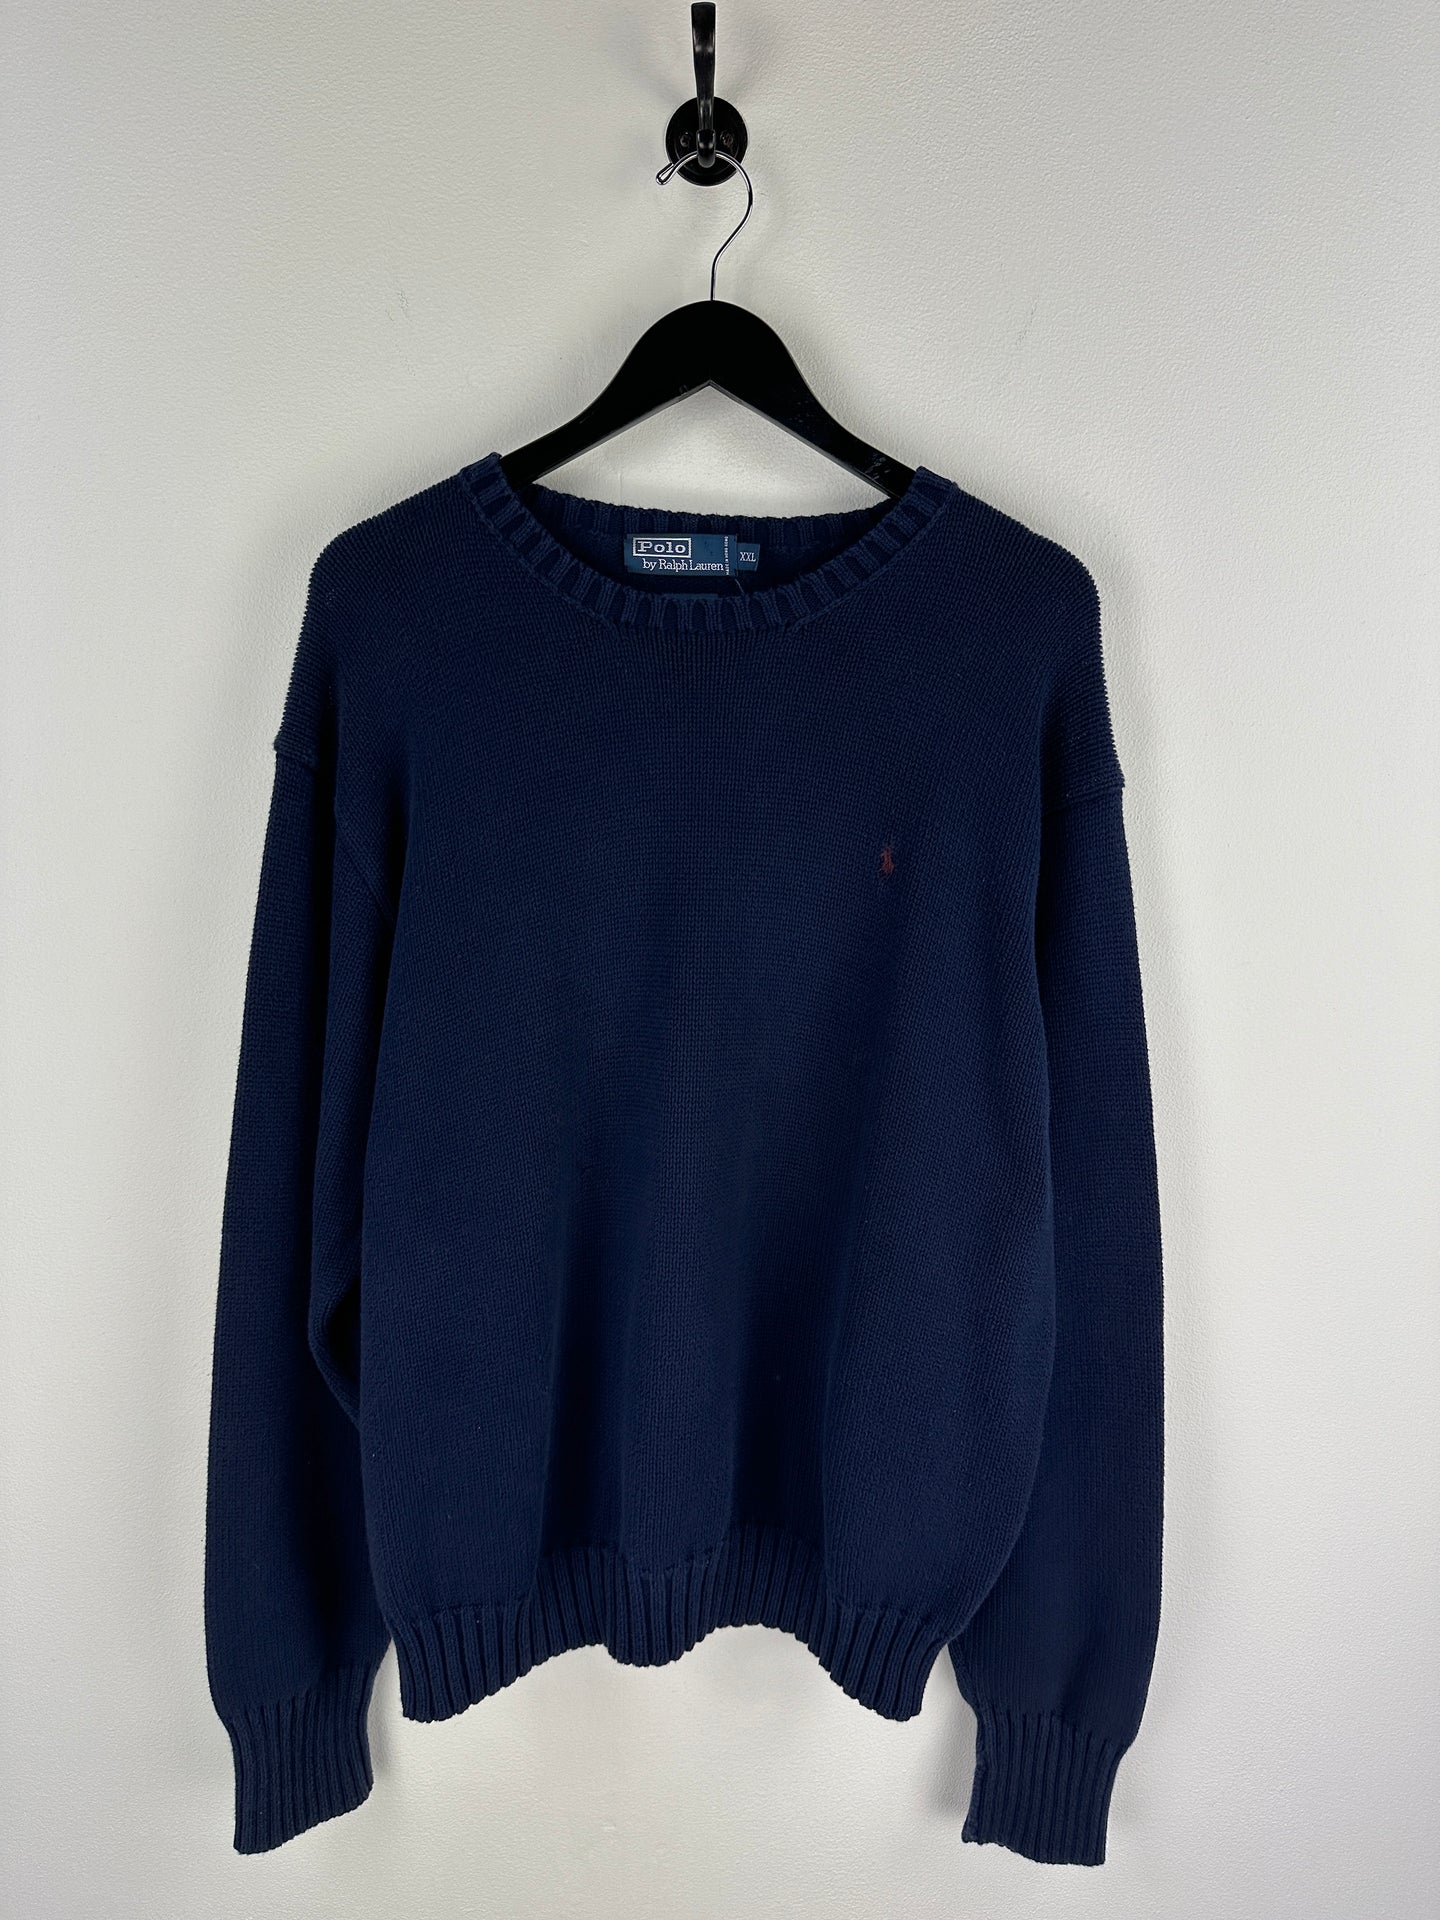 Vintage Polo Sweater (XXL)